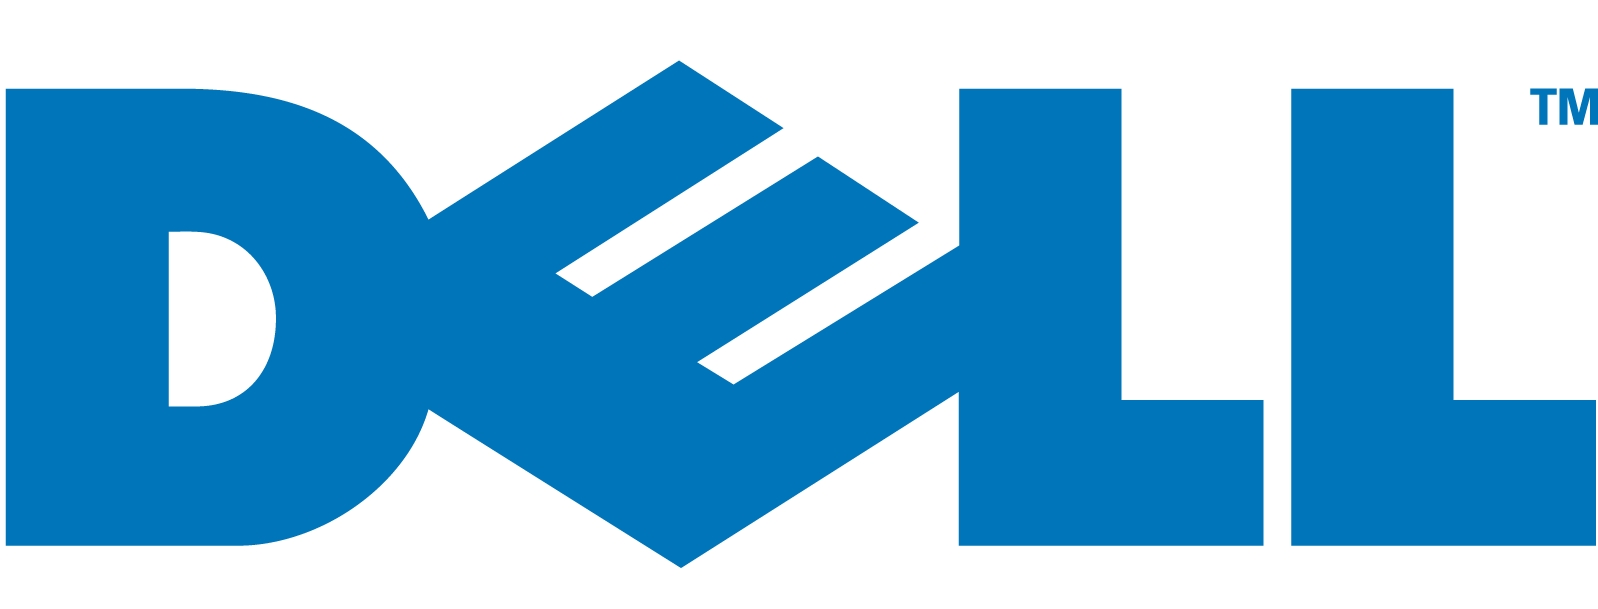 Dell_logo-3